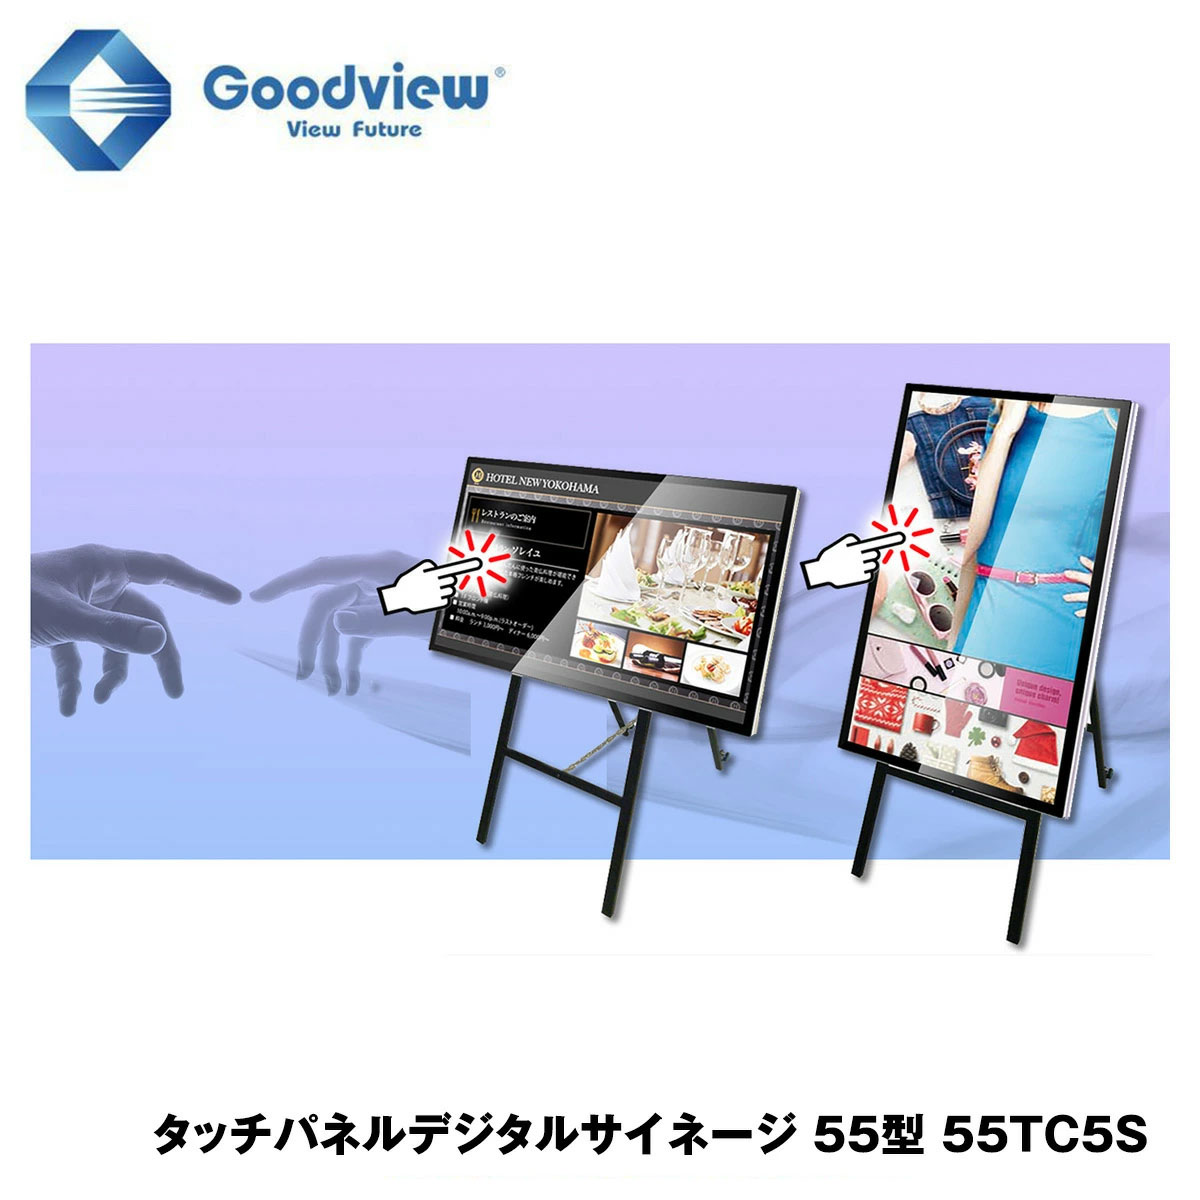 Goodview デジタルサイネージ タッチパネルサイネージ スタンドセット 450カンデラ 55型【55TC5S】